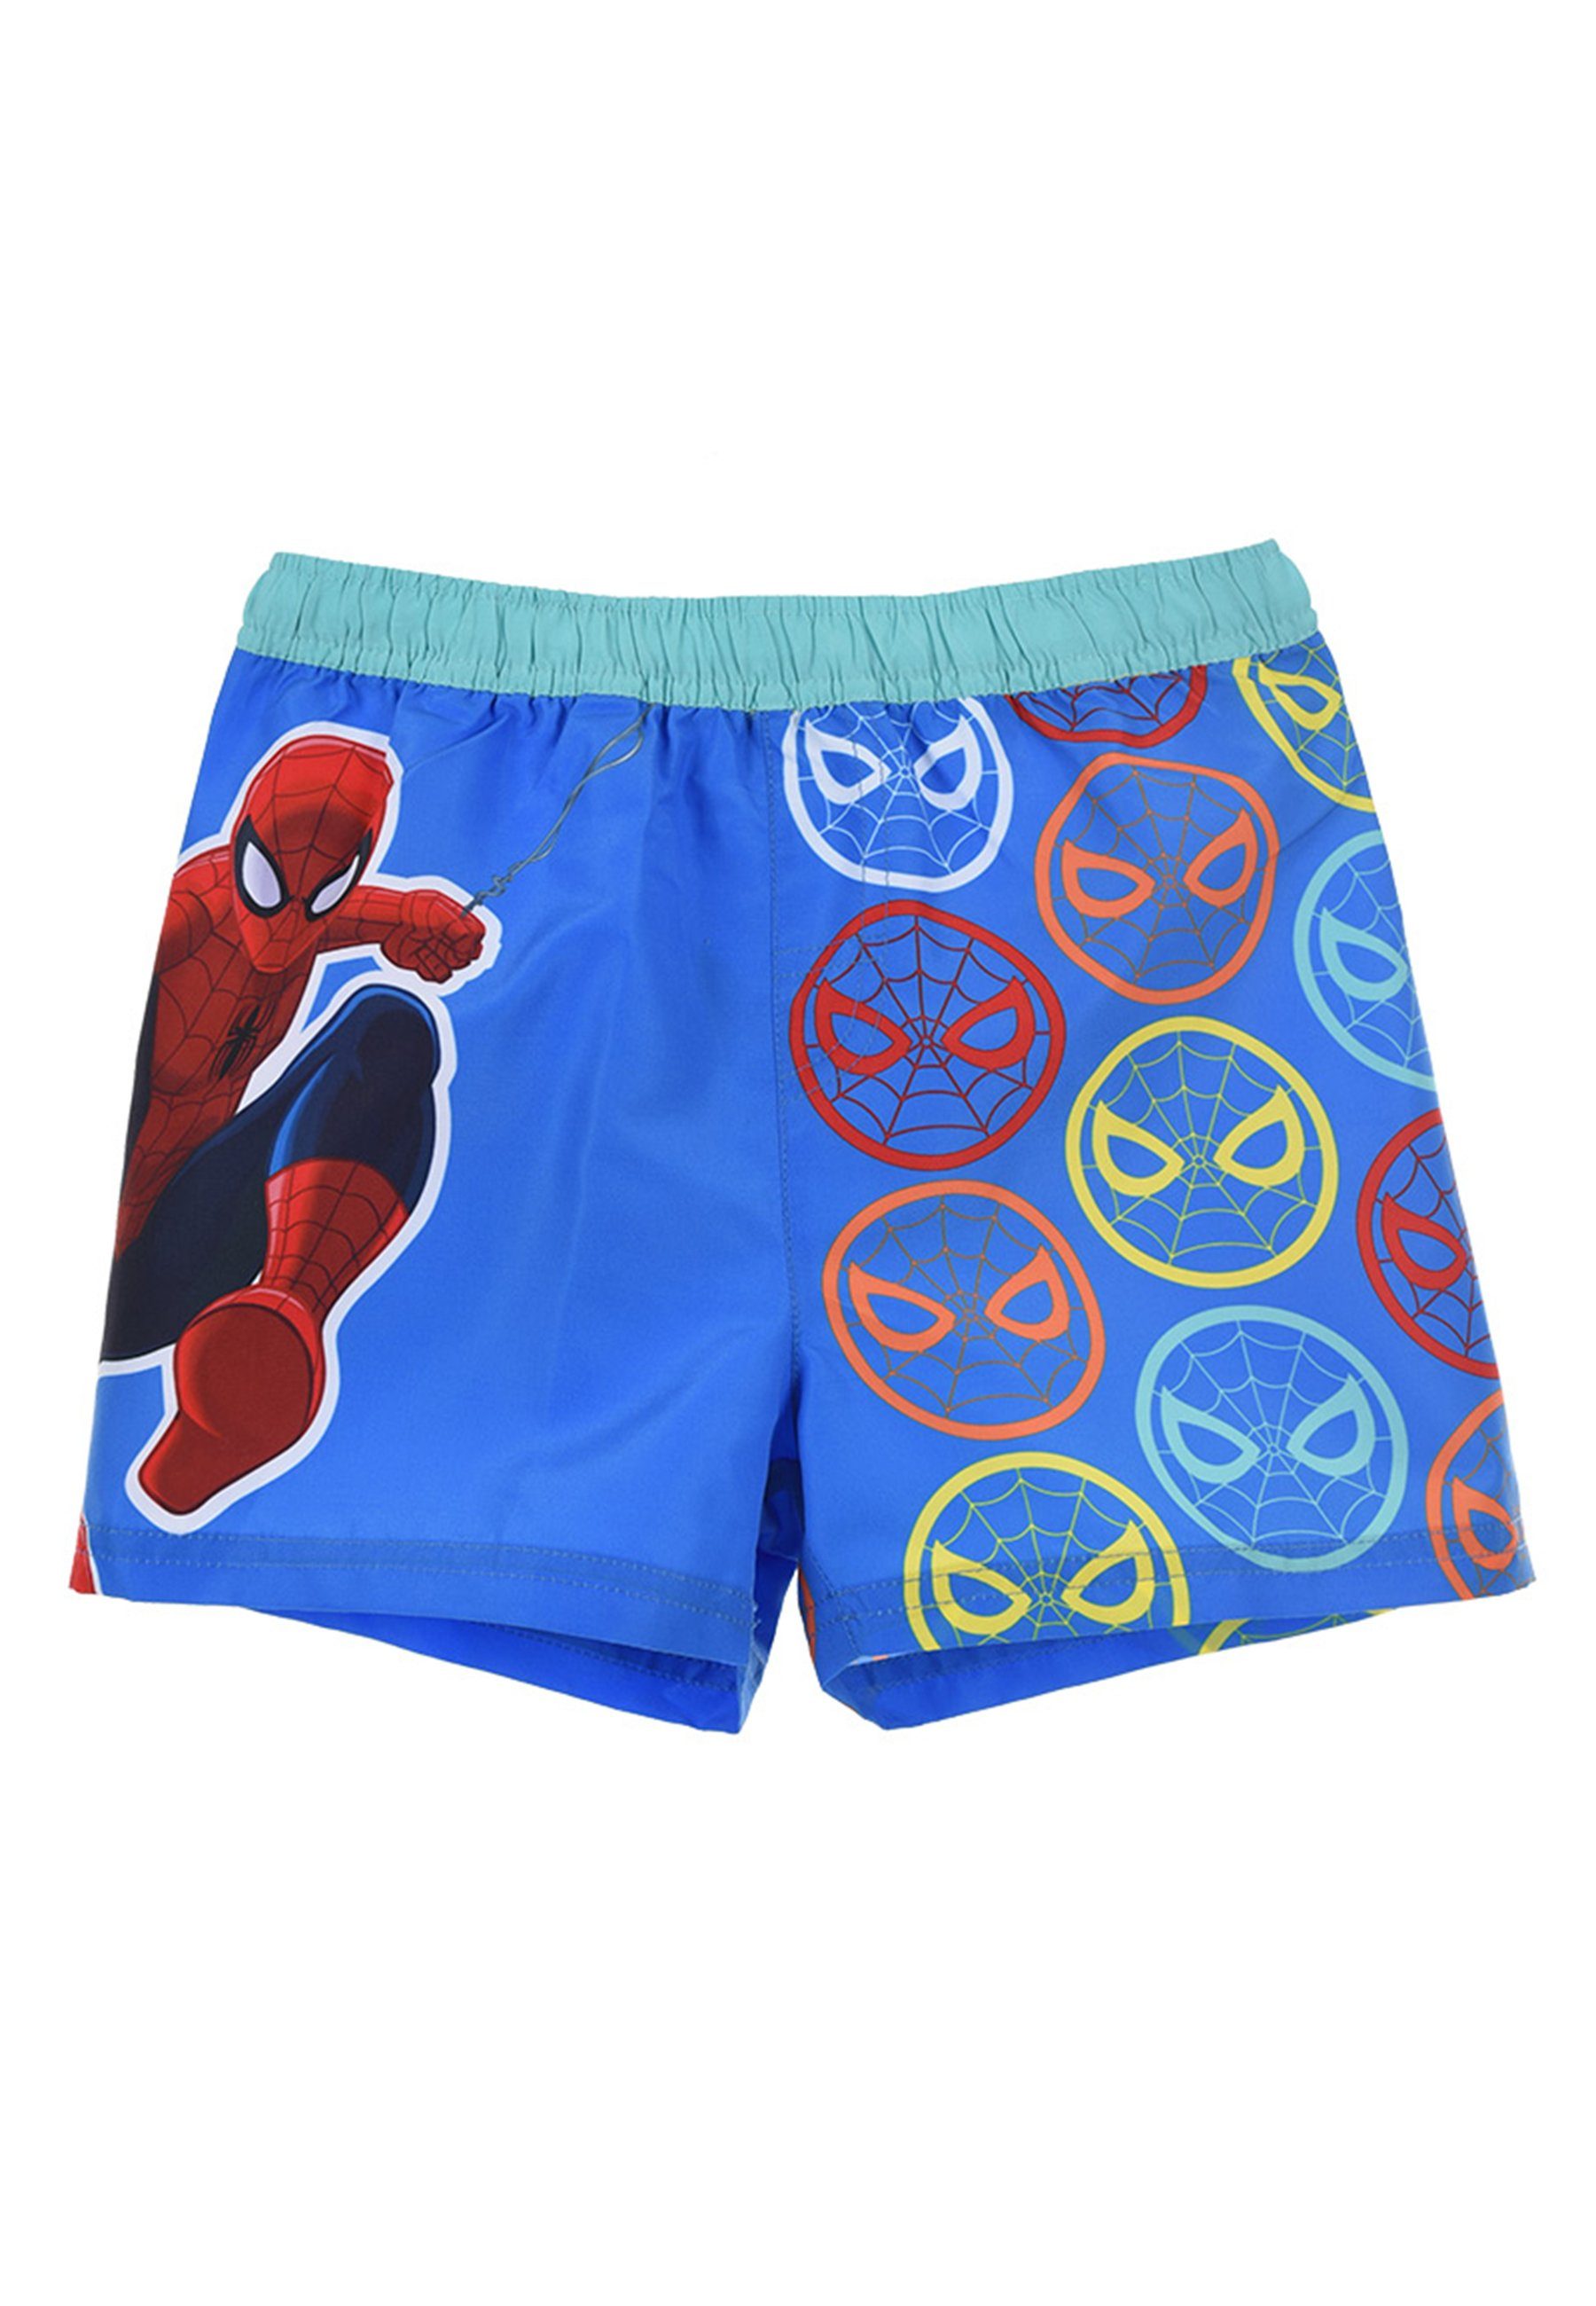 Spiderman Badeshorts Marvel Jungen Kinder Badepants Bermuda-Shorts Badehose Blau